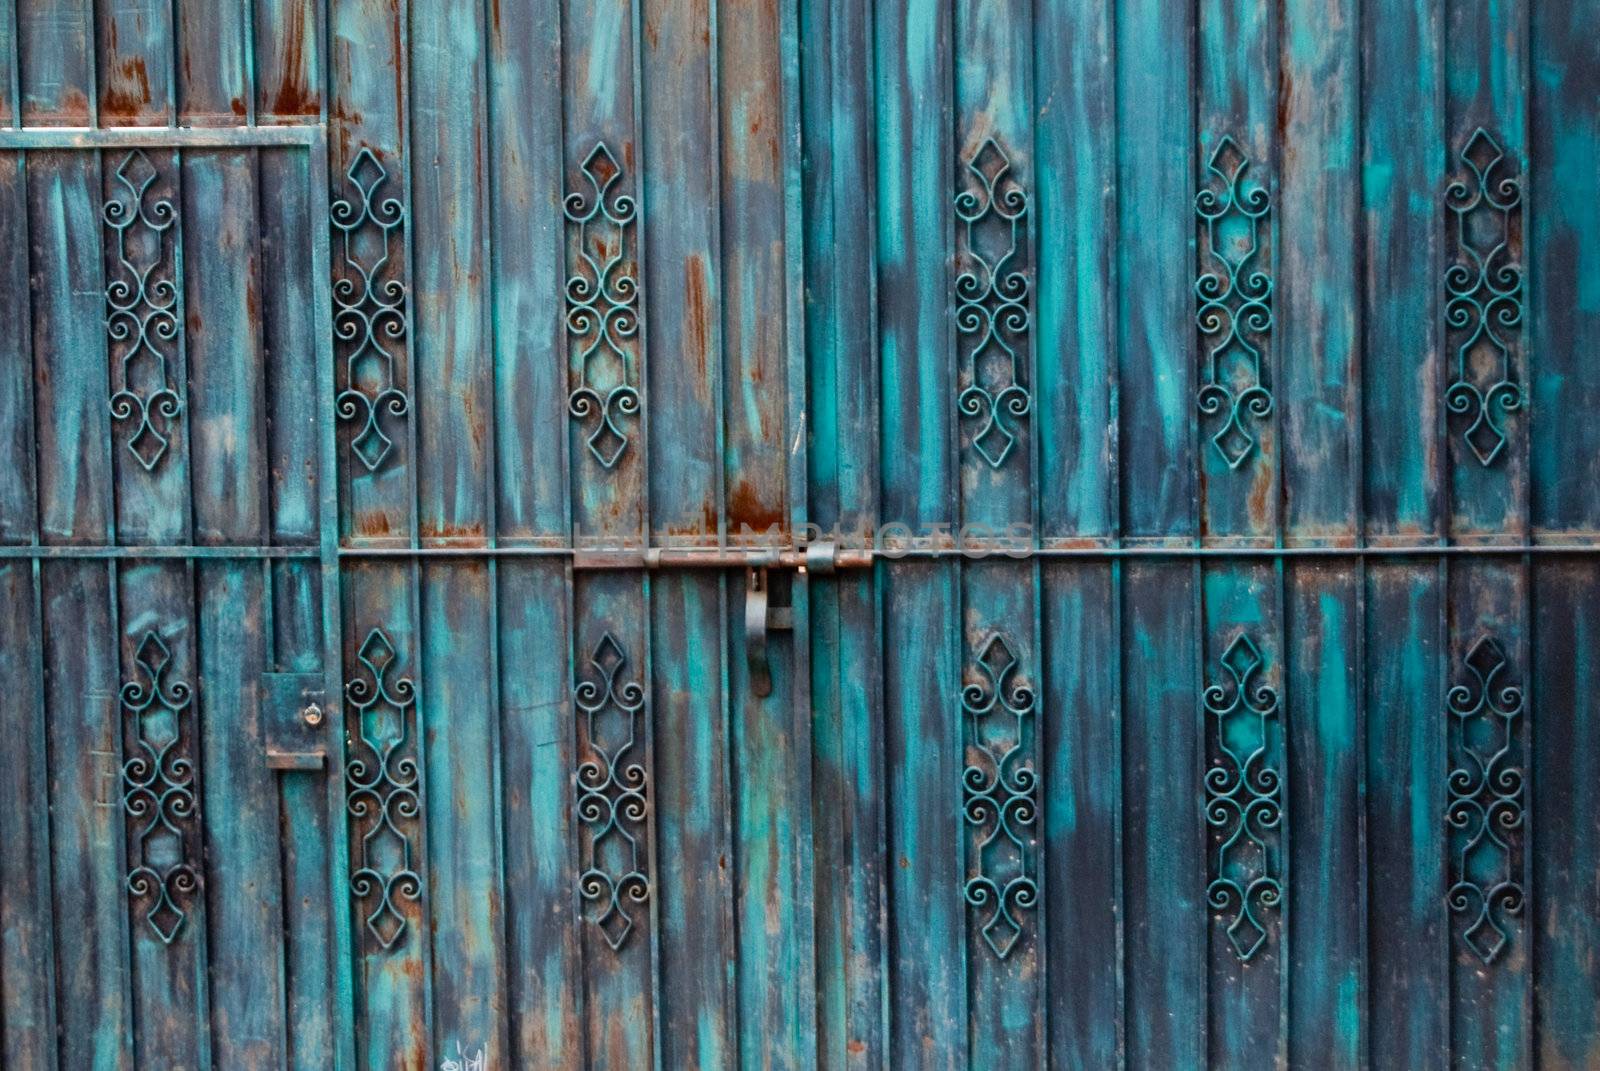 Rusty Blue Gateway by emattil